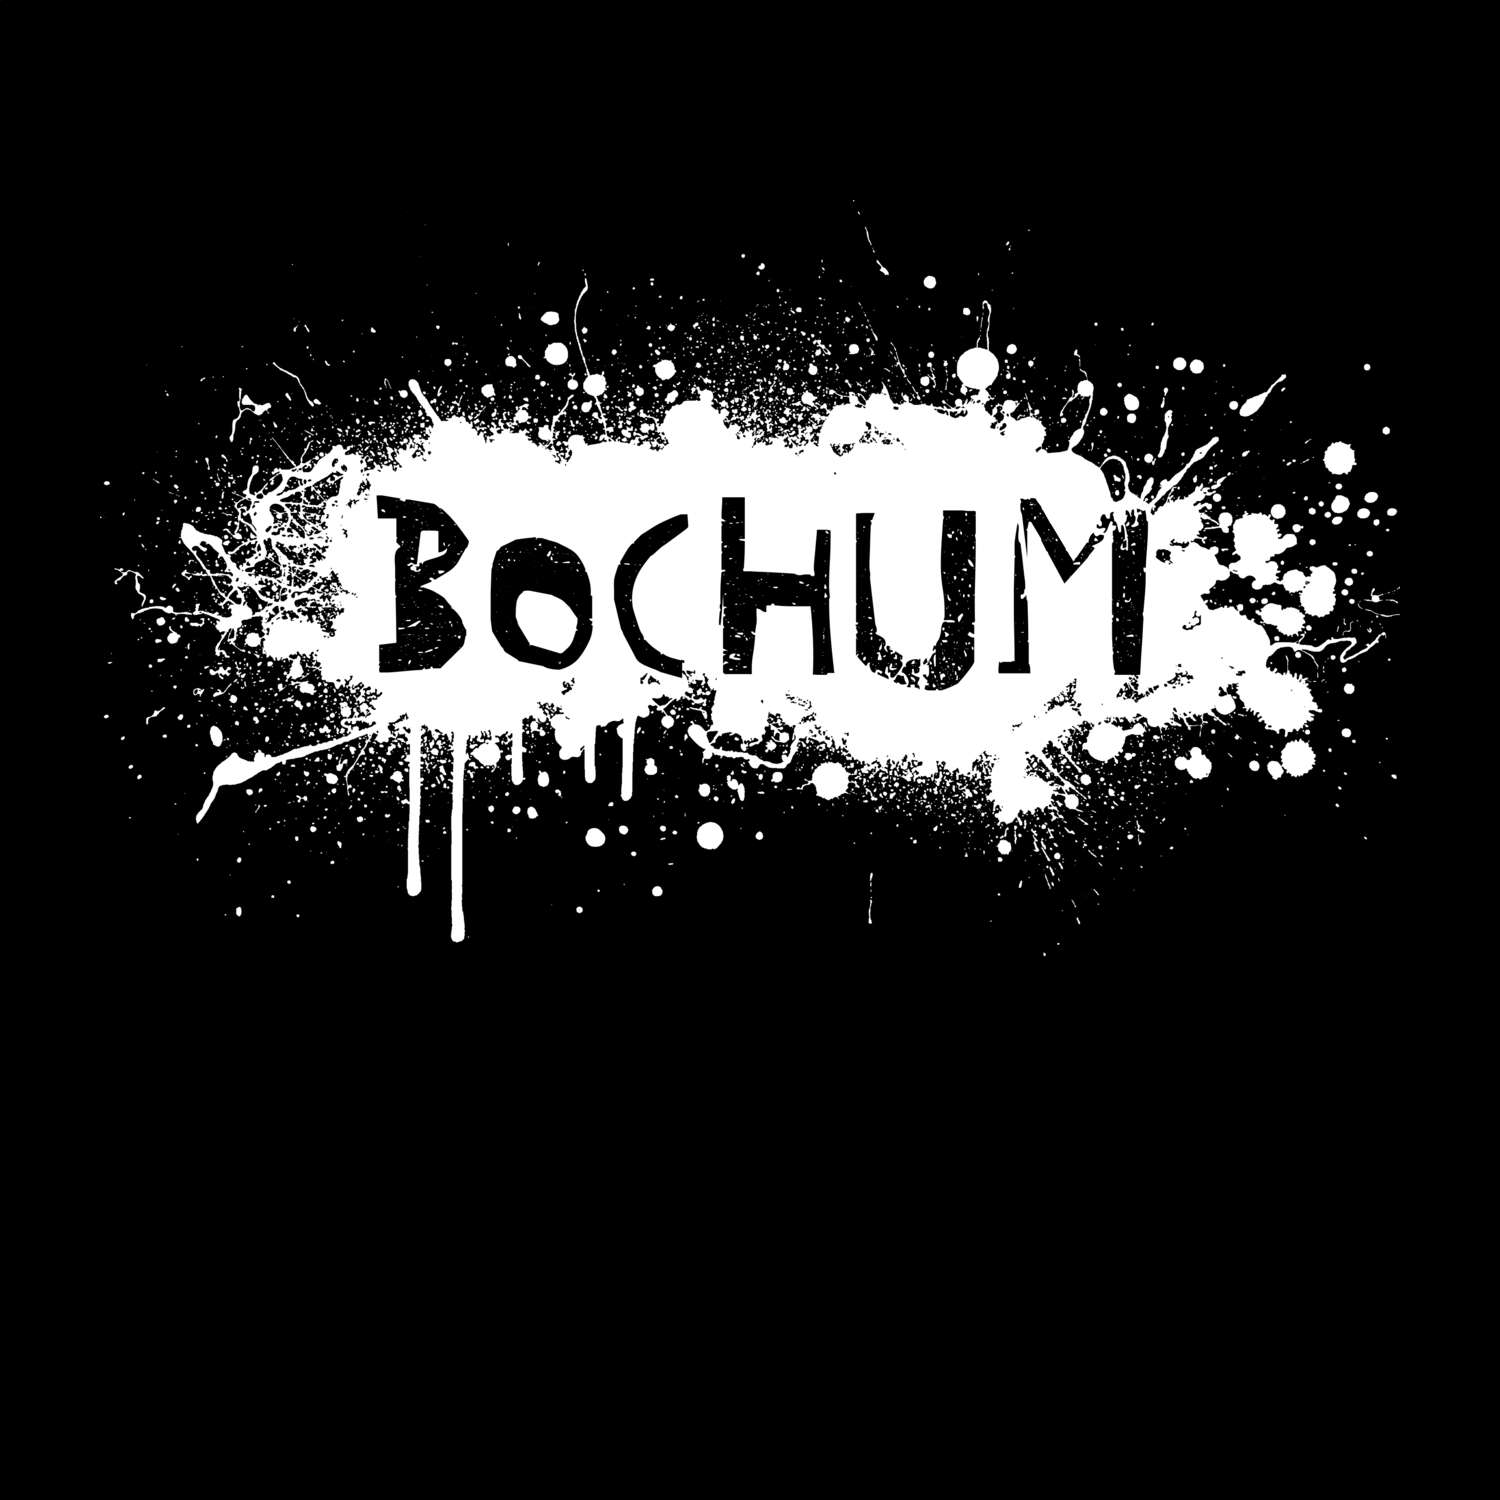 Bochum T-Shirt »Paint Splash Punk«